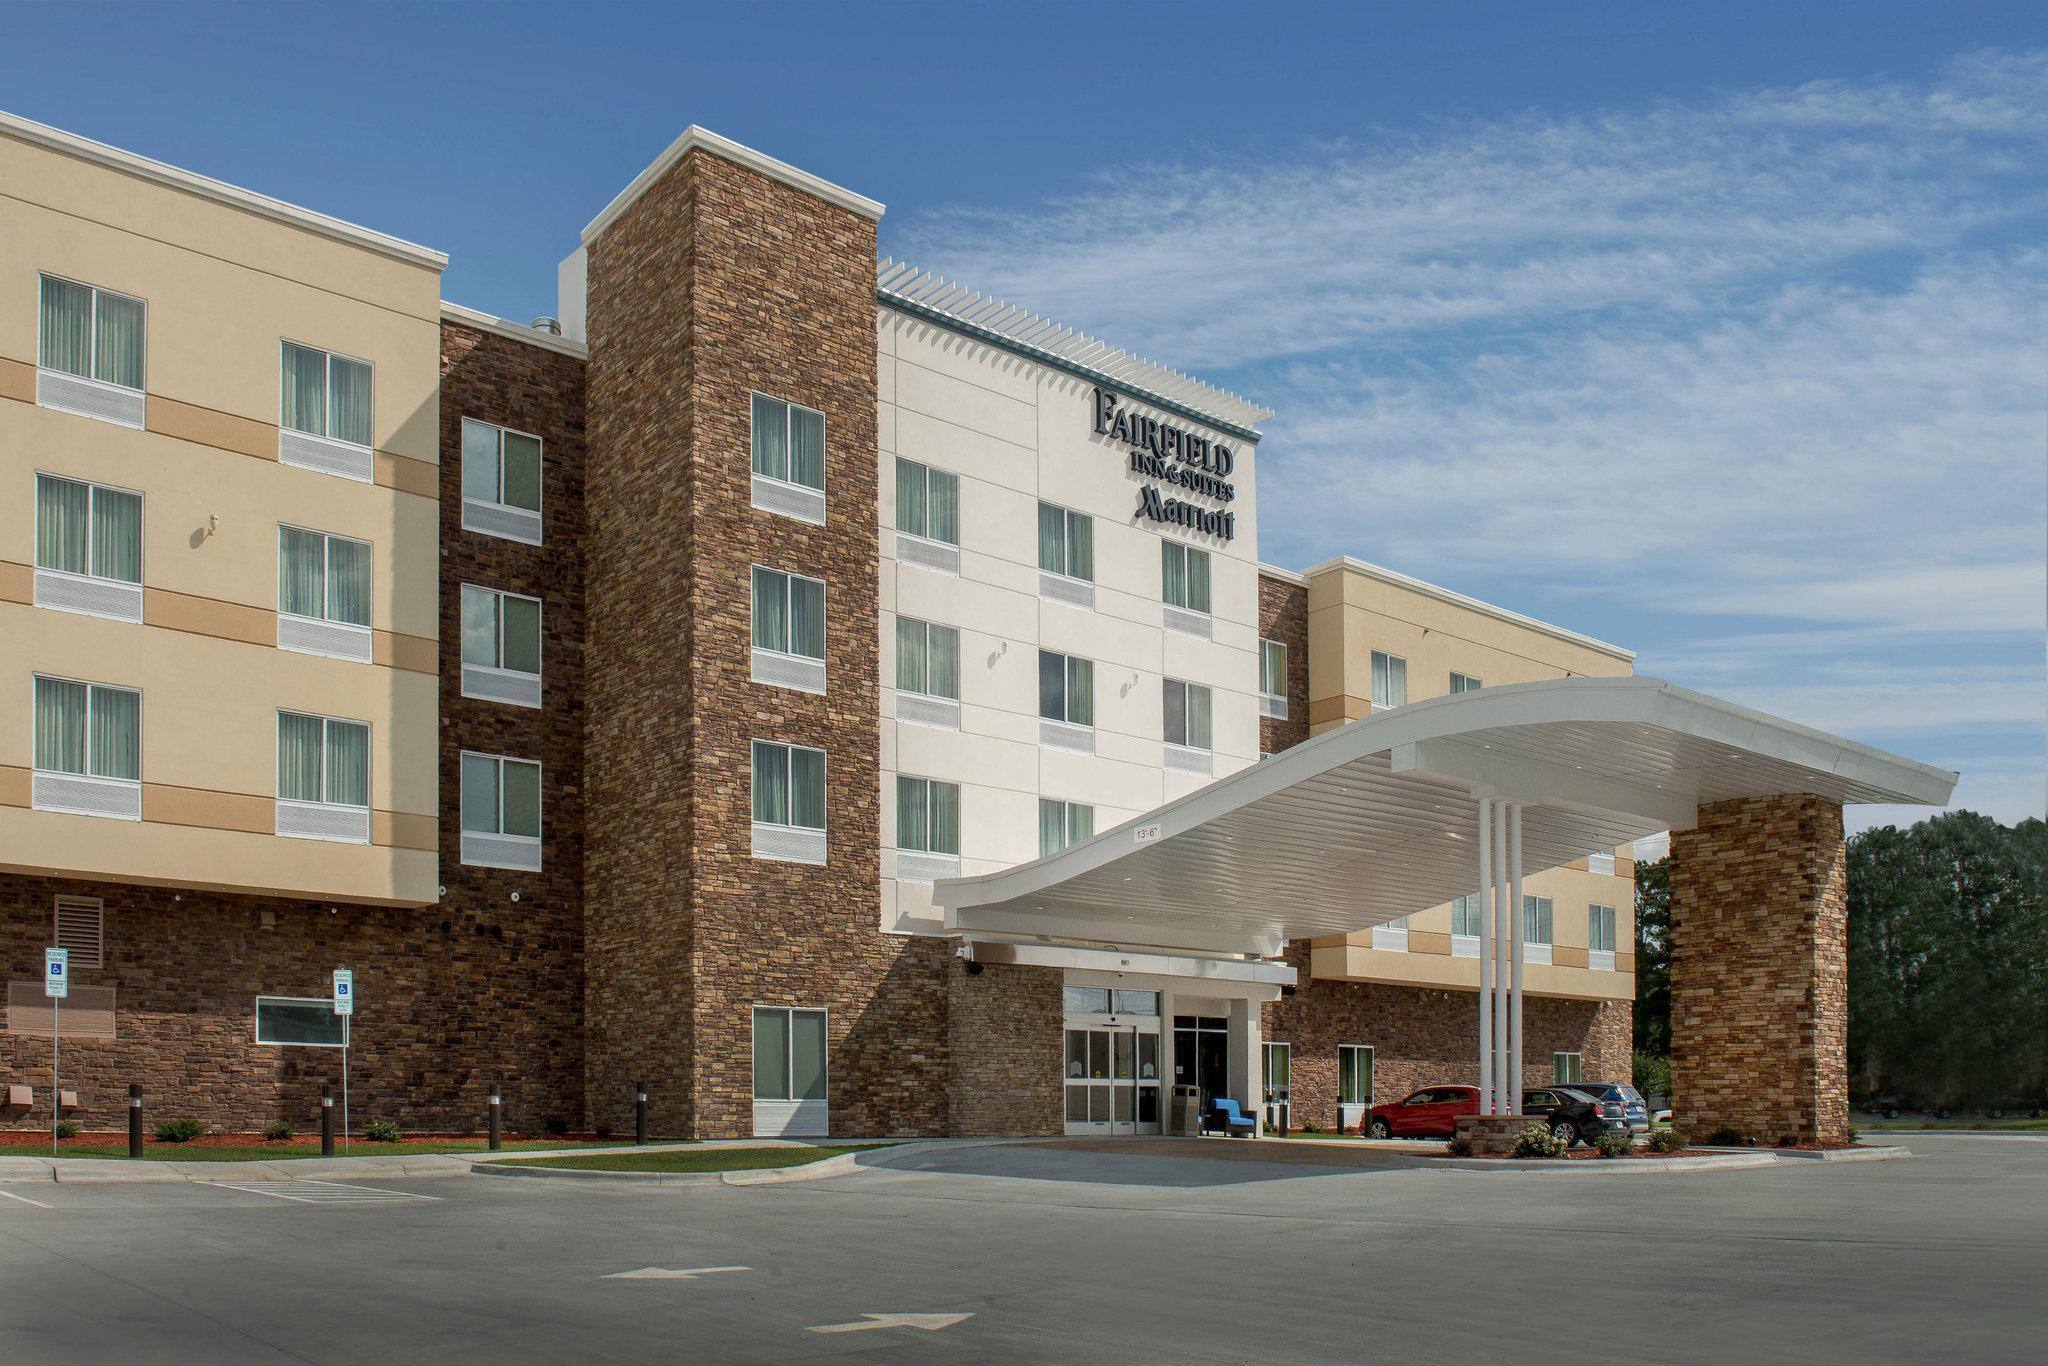 Fairfield Inn & Suites Washington - Washington